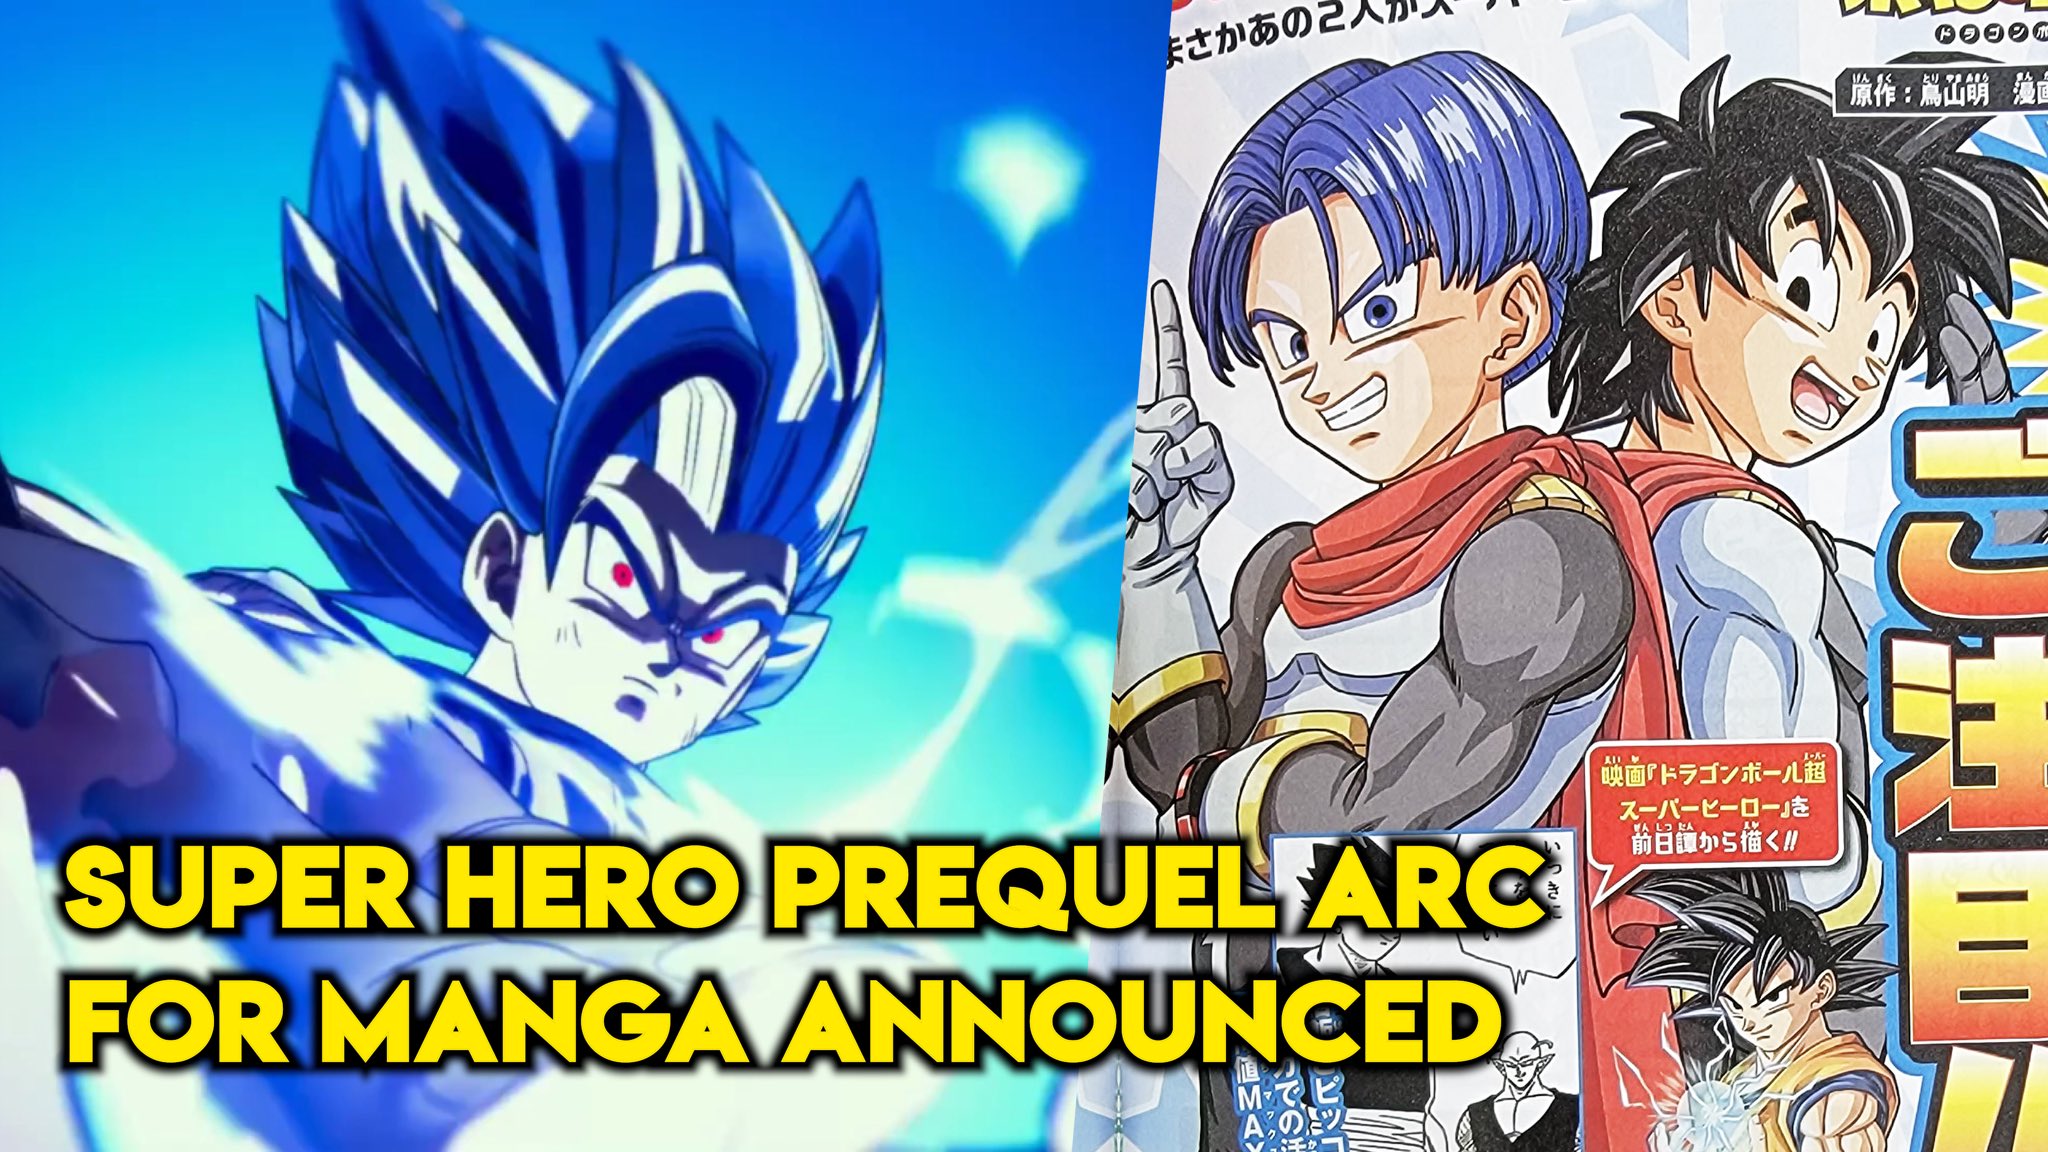 Dragon Ball Super manga return slated for December 2022, new arc confirmed